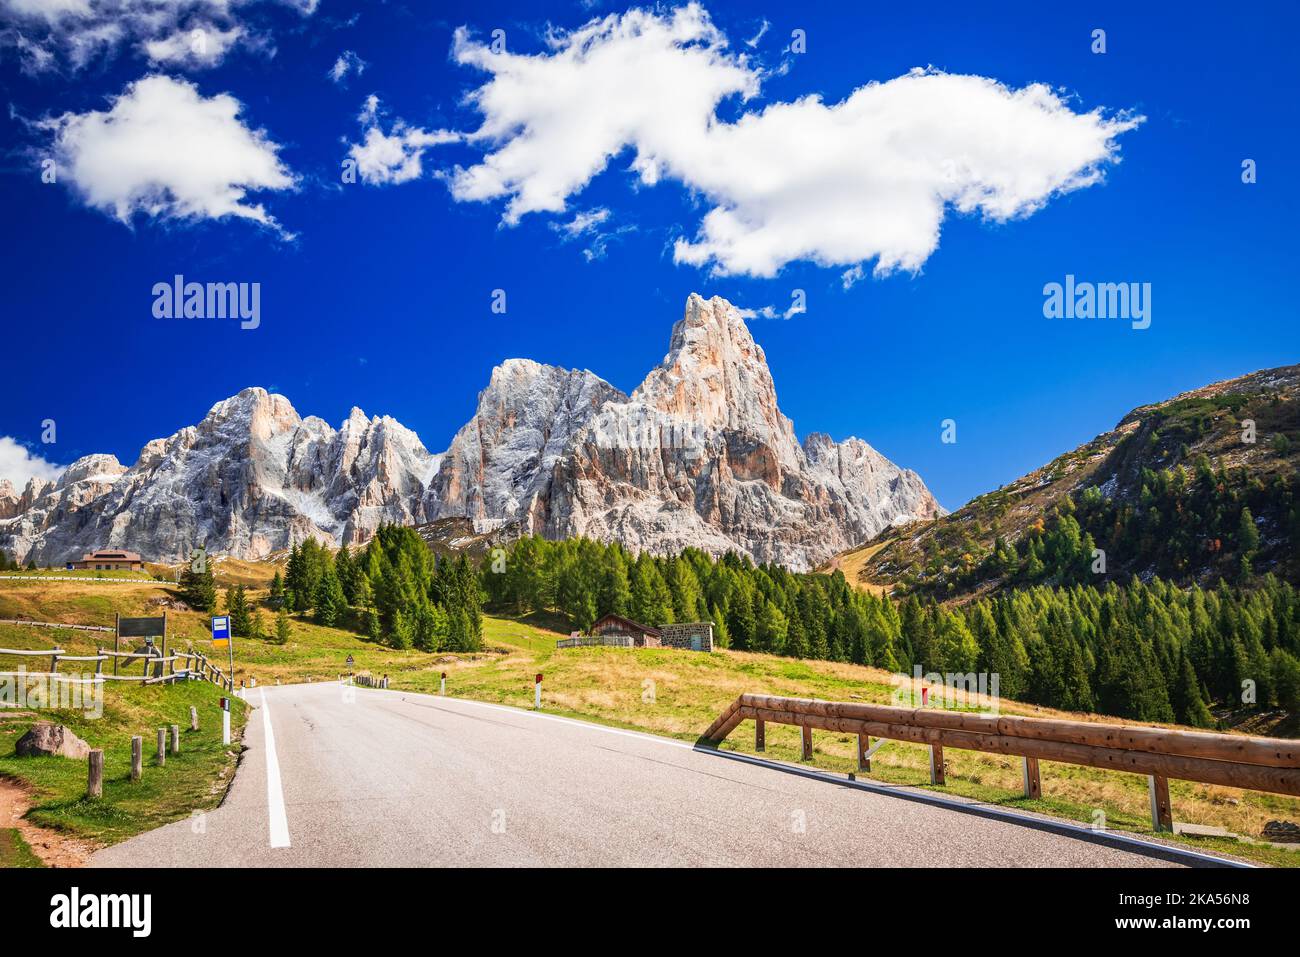 Passo Rolle, Italia. Paesaggi autunnali mozzafiato Alpi dolomitiche, con il monte Cimon della pala (3184 m). Paesaggio di Sudtirolo, Trentino Alto Adige italia Foto Stock